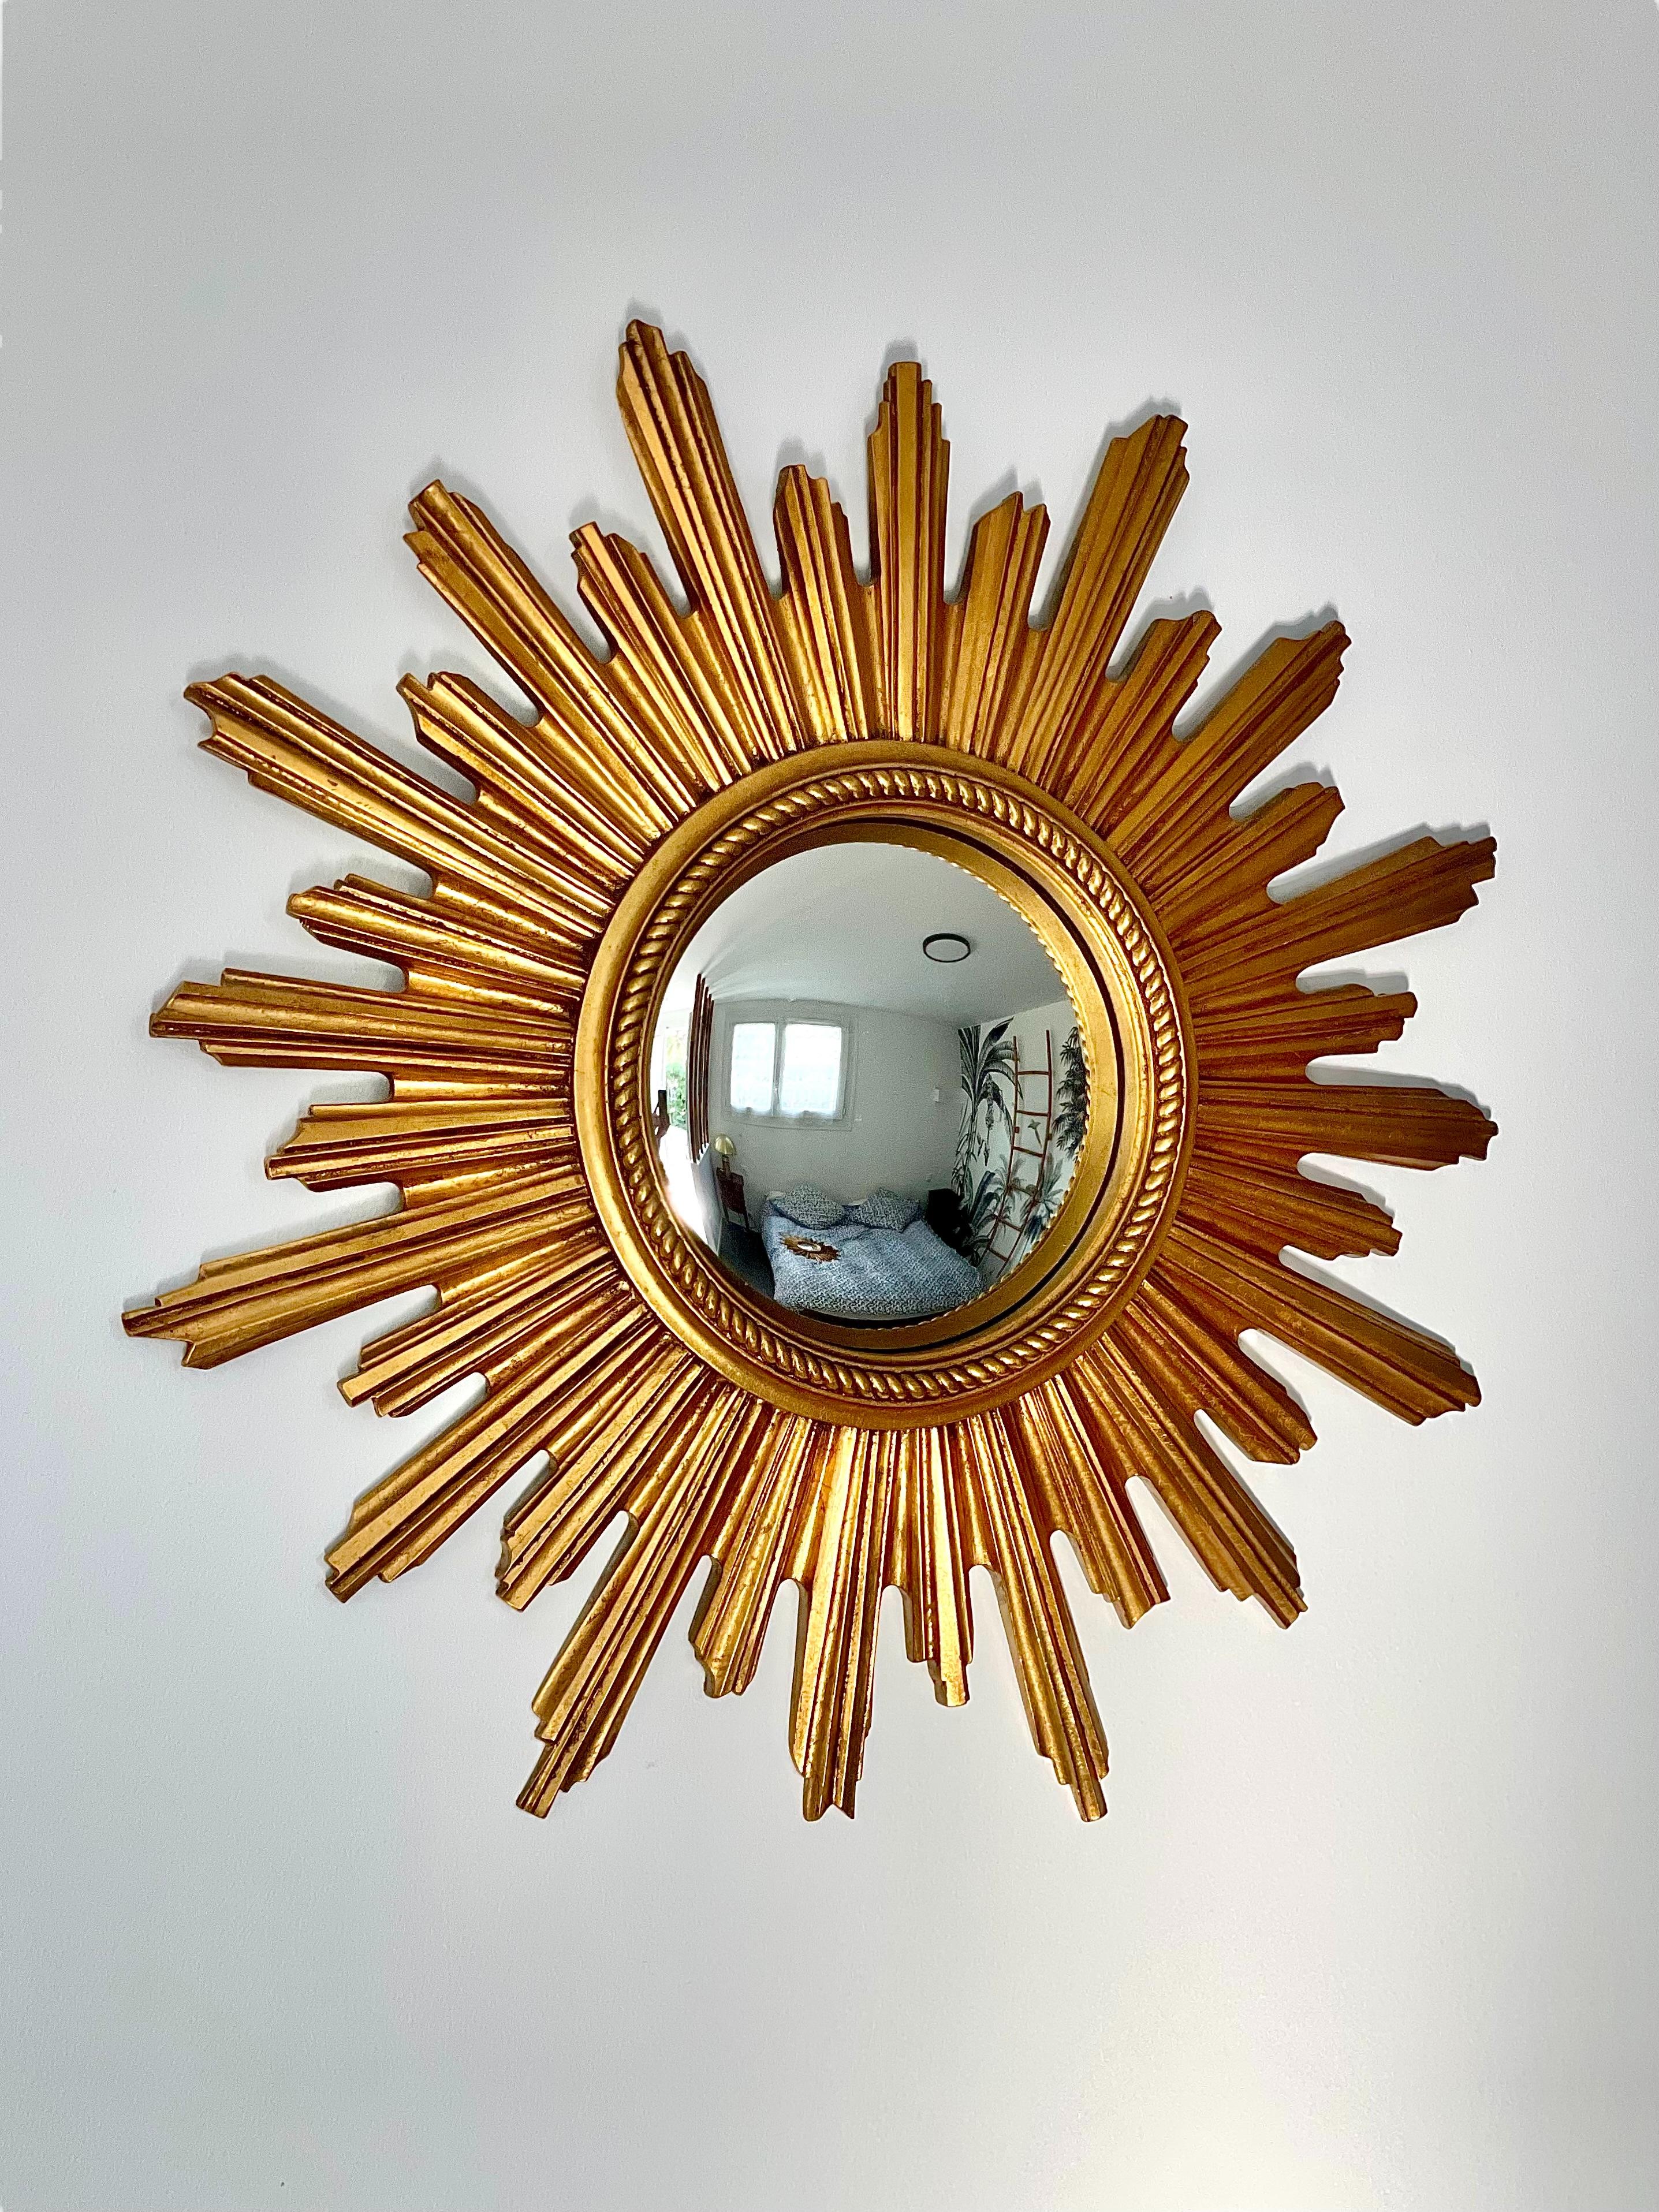 Dieser atemberaubende Vintage-Sunburst-Wandspiegel verfügt über eine konvexe Spiegelplatte, die von einer Reihe von geschnitzten und vergoldeten Holzstäben umgeben ist, welche die Sonnenstrahlen imitieren. Die Spiegelplatte selbst wird von einem